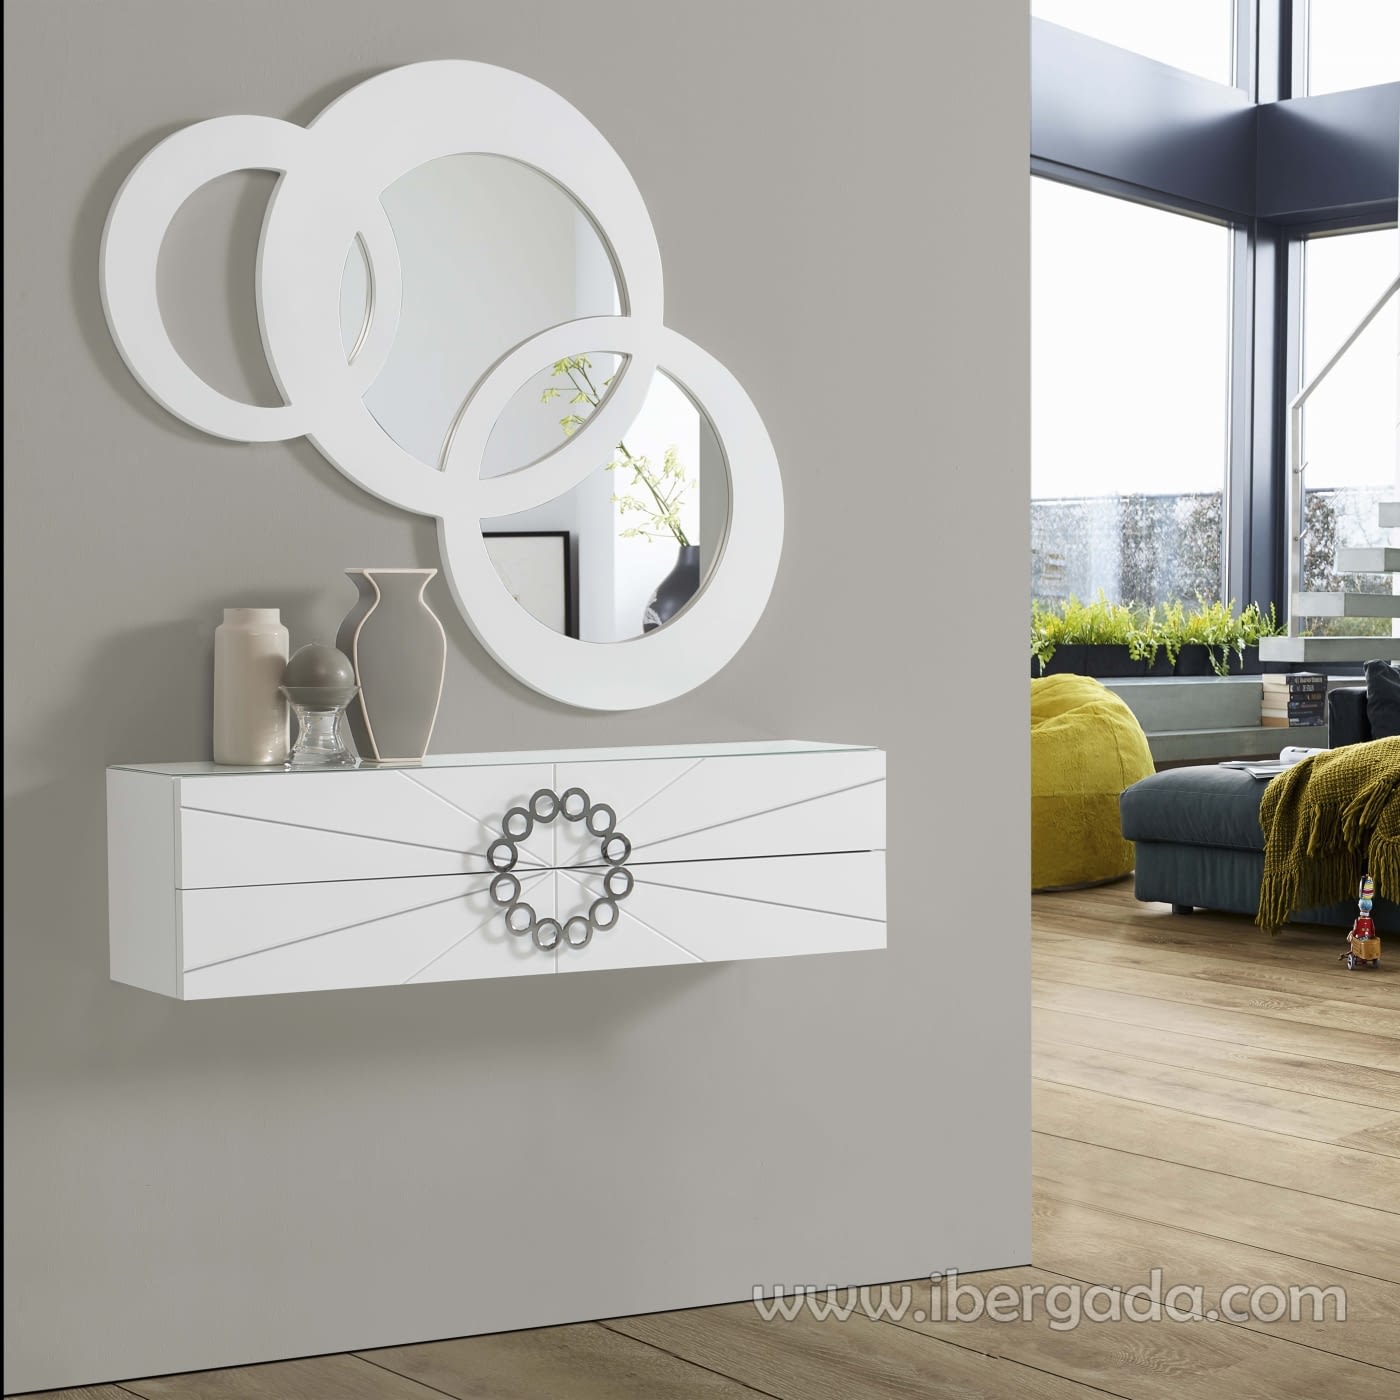 Moderno espejo LED lámpara de pared imagen lámpara frontal pared baño blanco cálido lámpara de pared